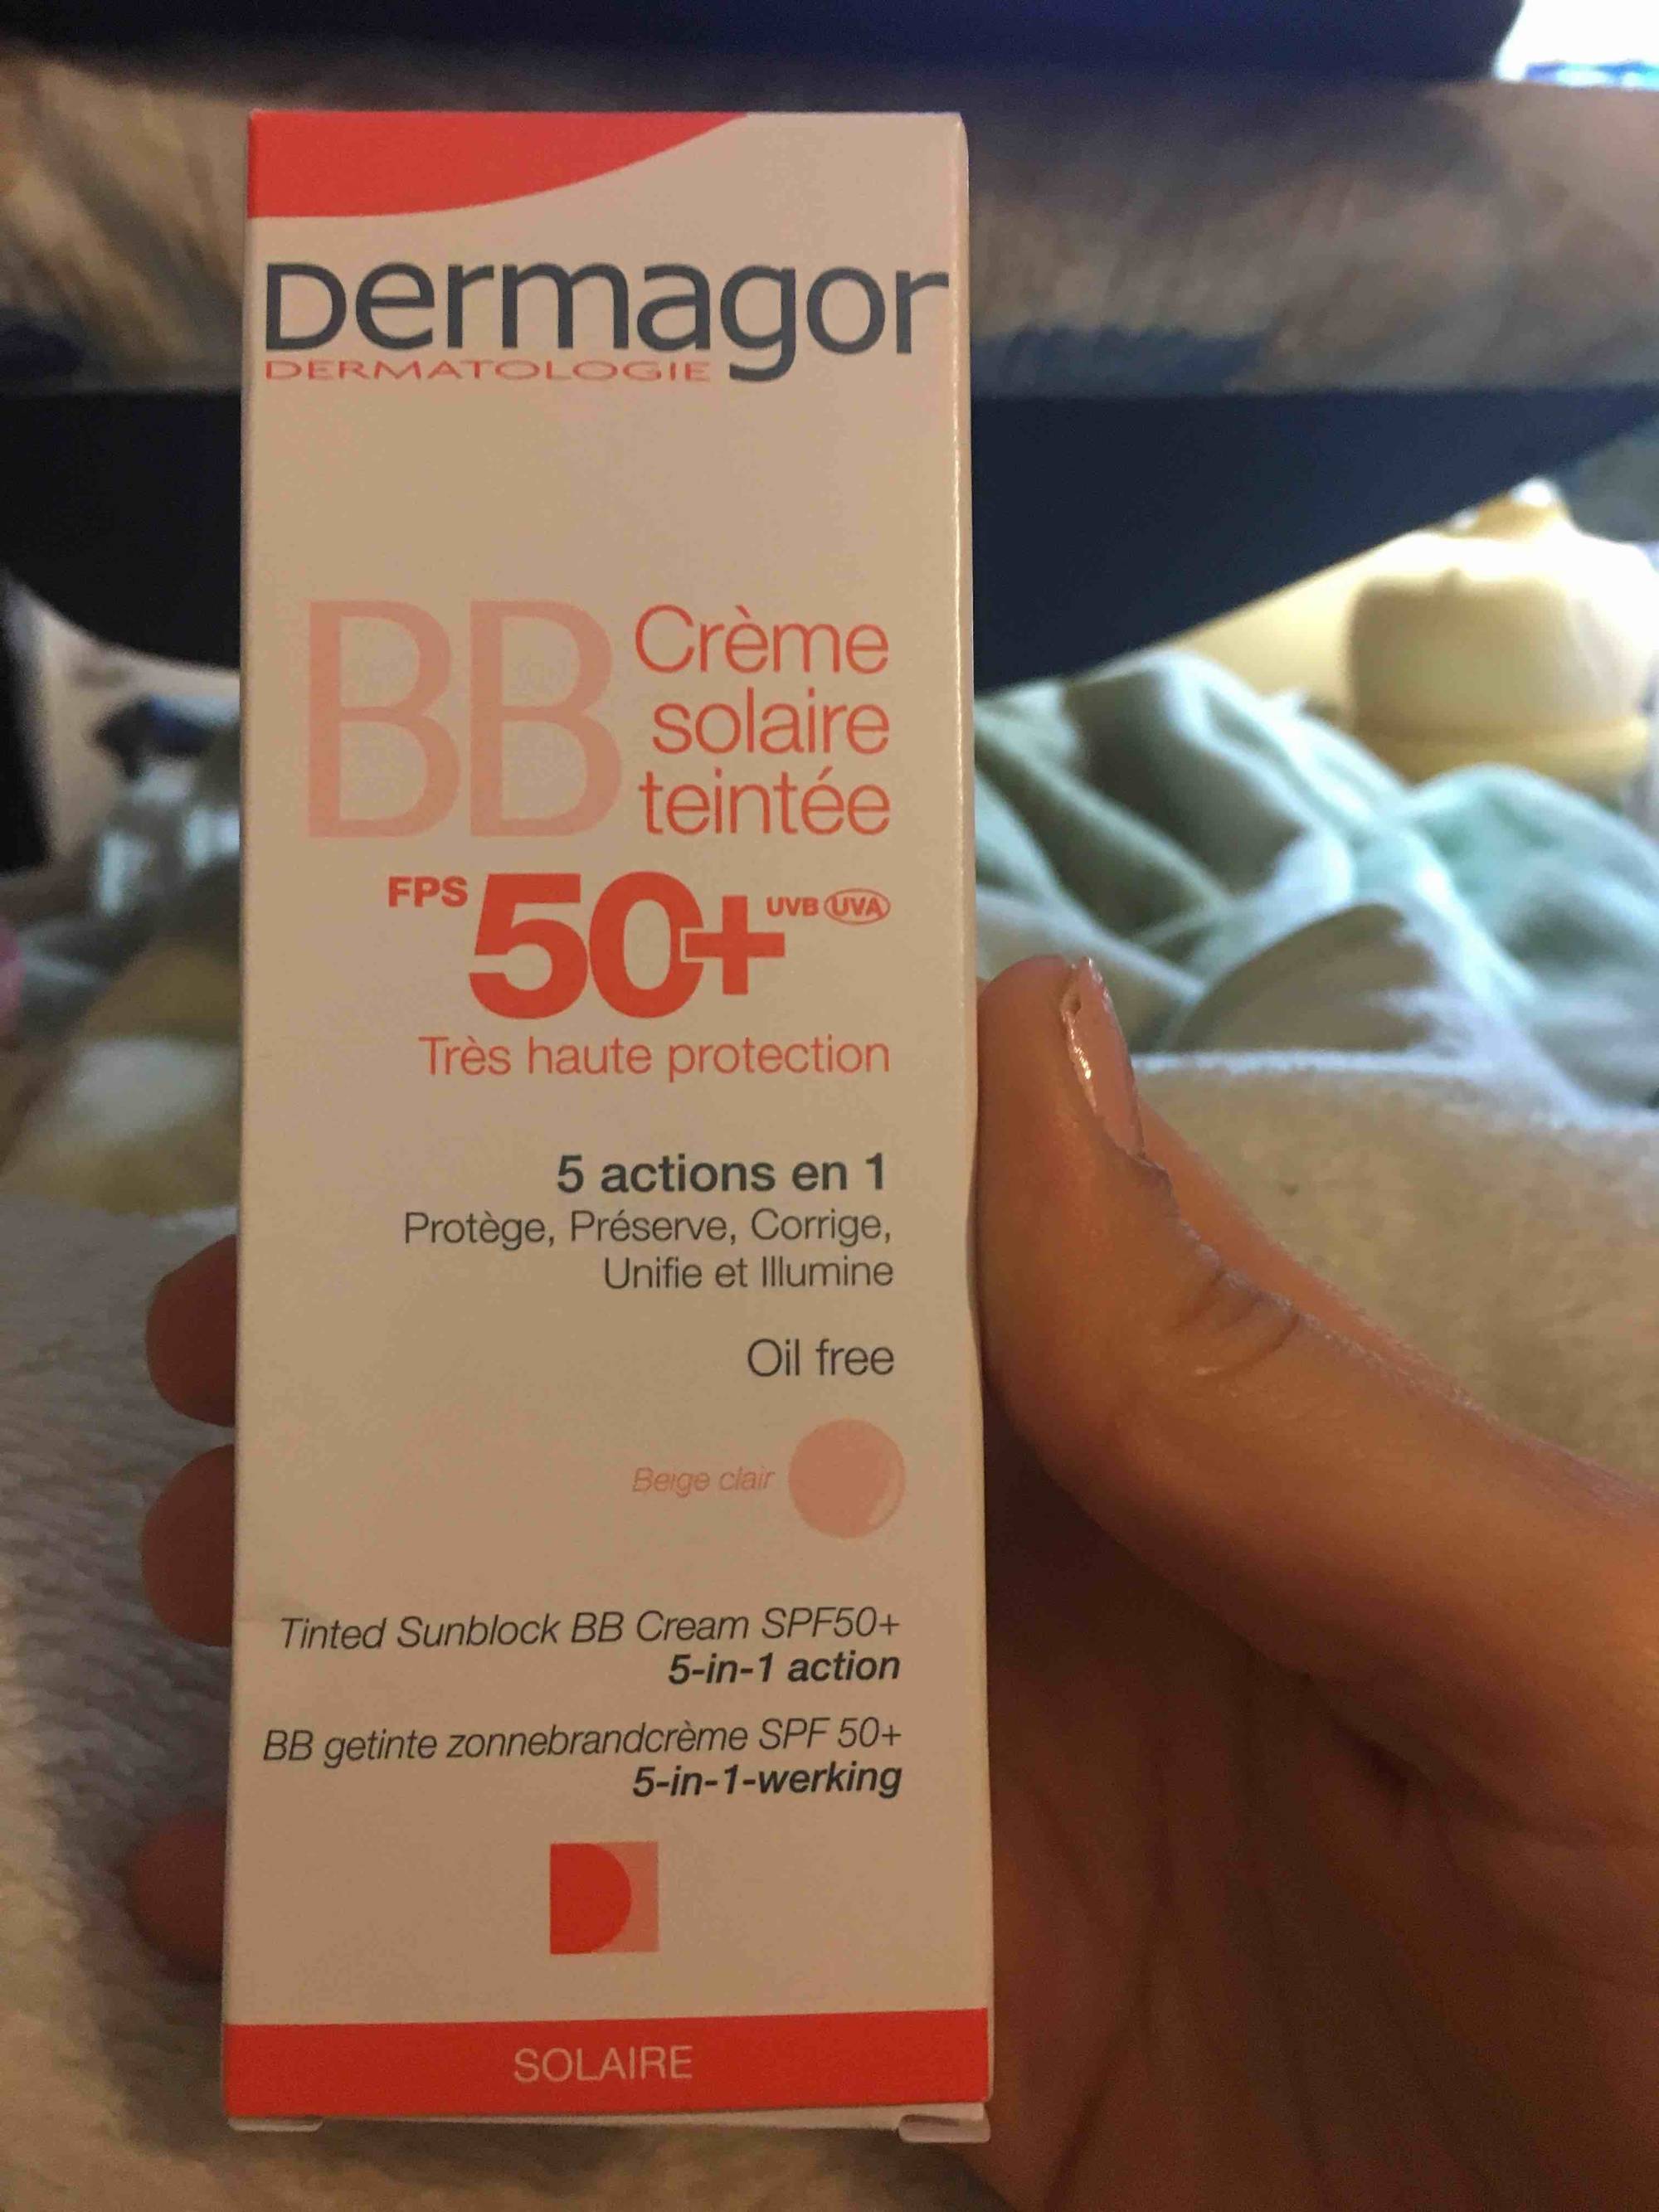 DERMAGOR - BB crème solaire teintée FPS 50+